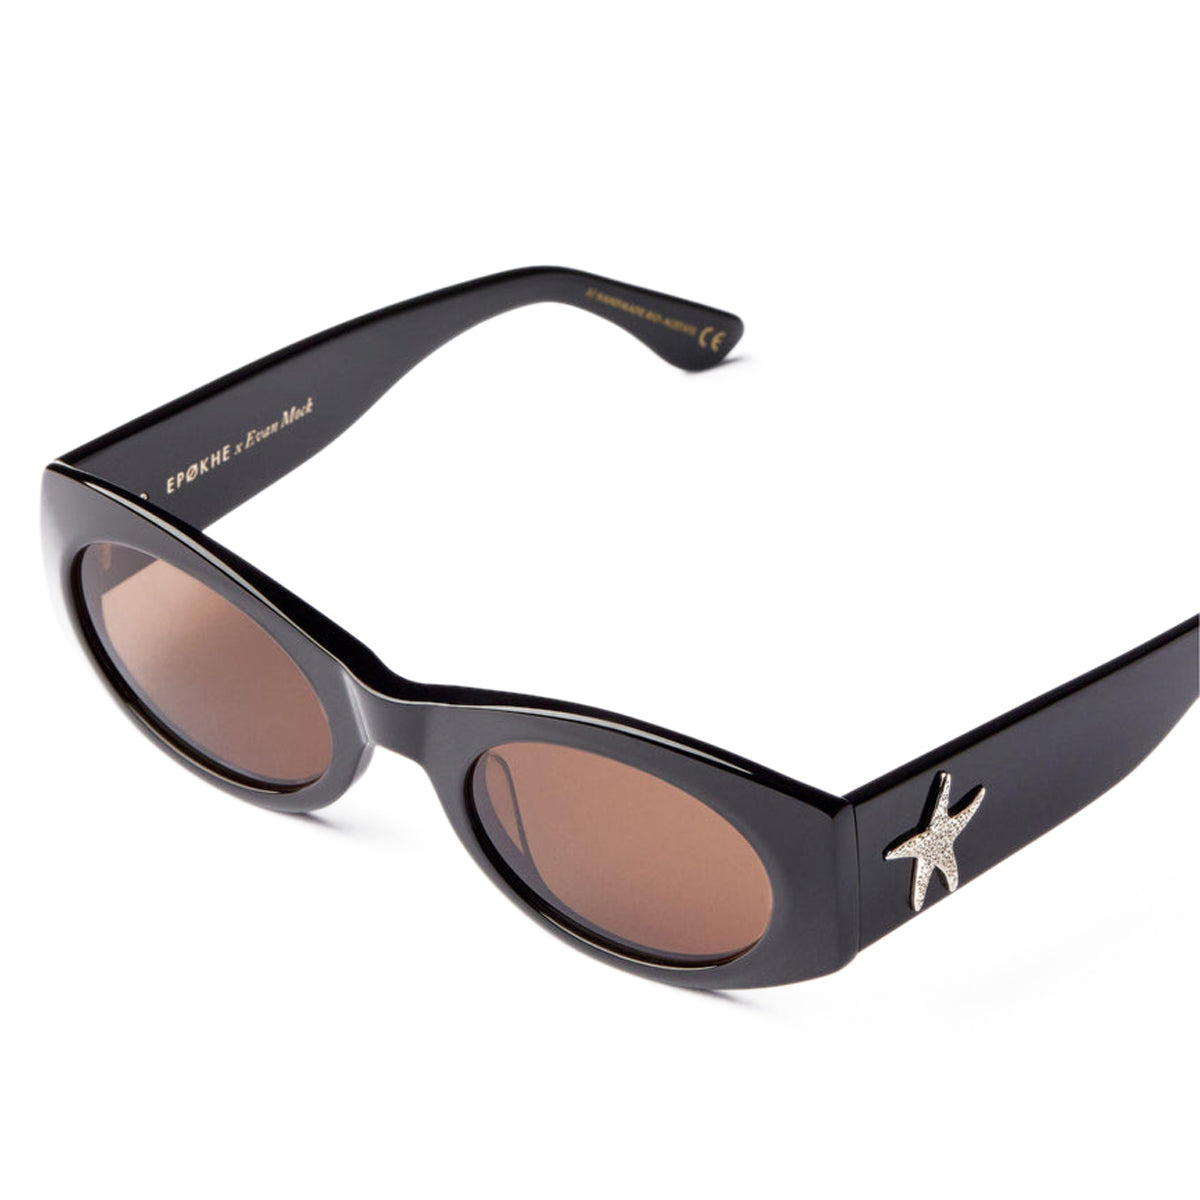 Epokhe Suede Sunglasses - Black Polished/Bronze Amber image 3